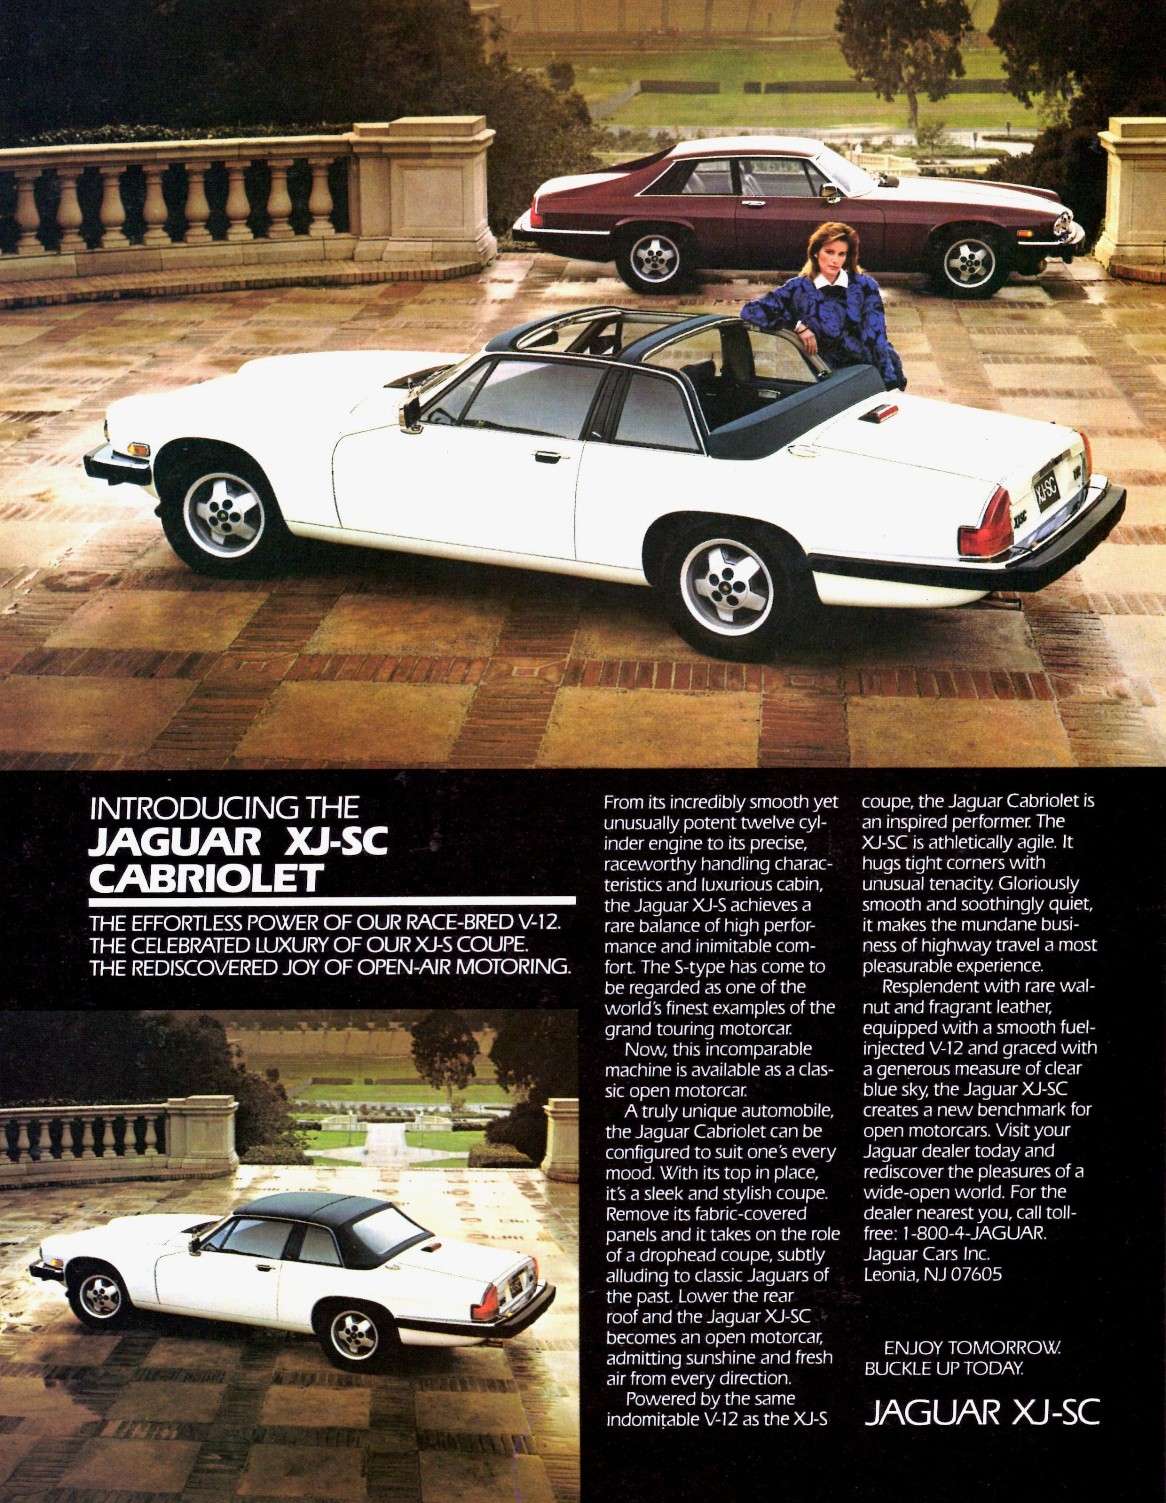 1986-Jaguar-XJ-SC-Cabriolet.jpg